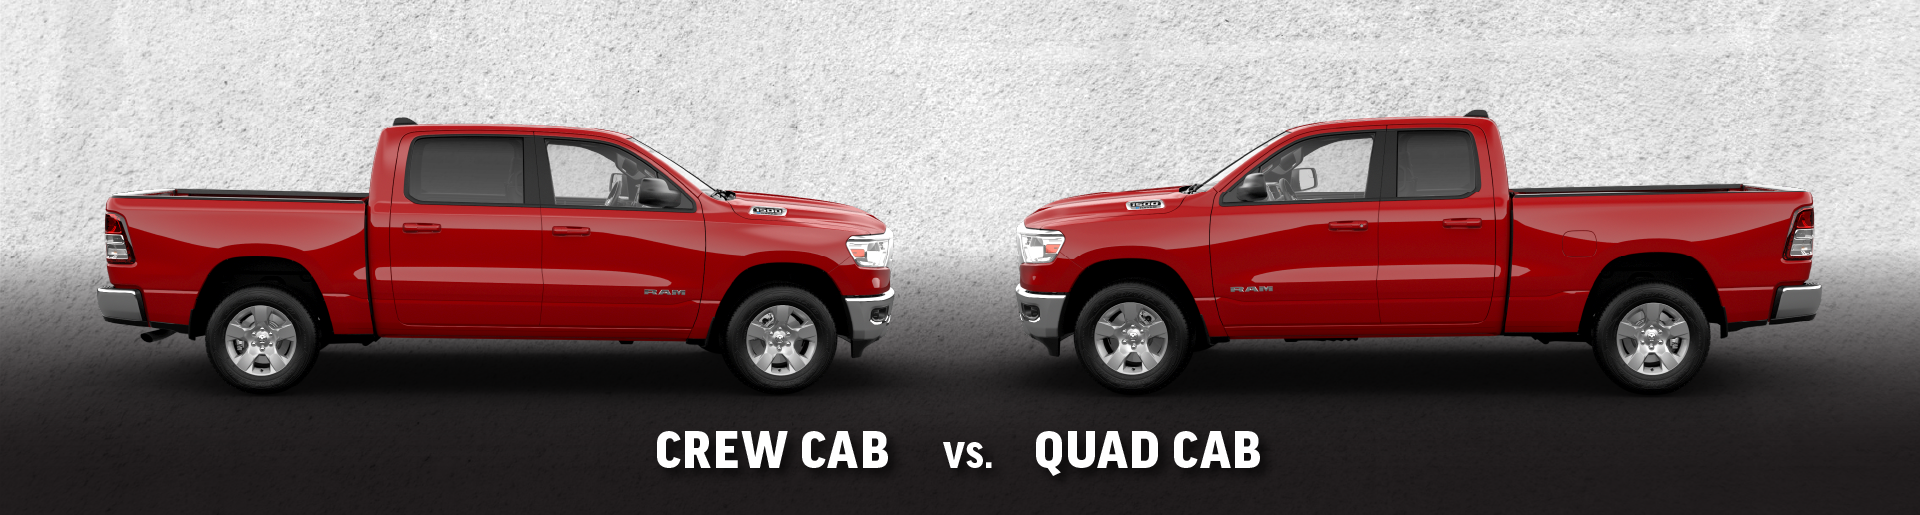 Ram 1500 Crew Cab vs. Quad Cab Comparison